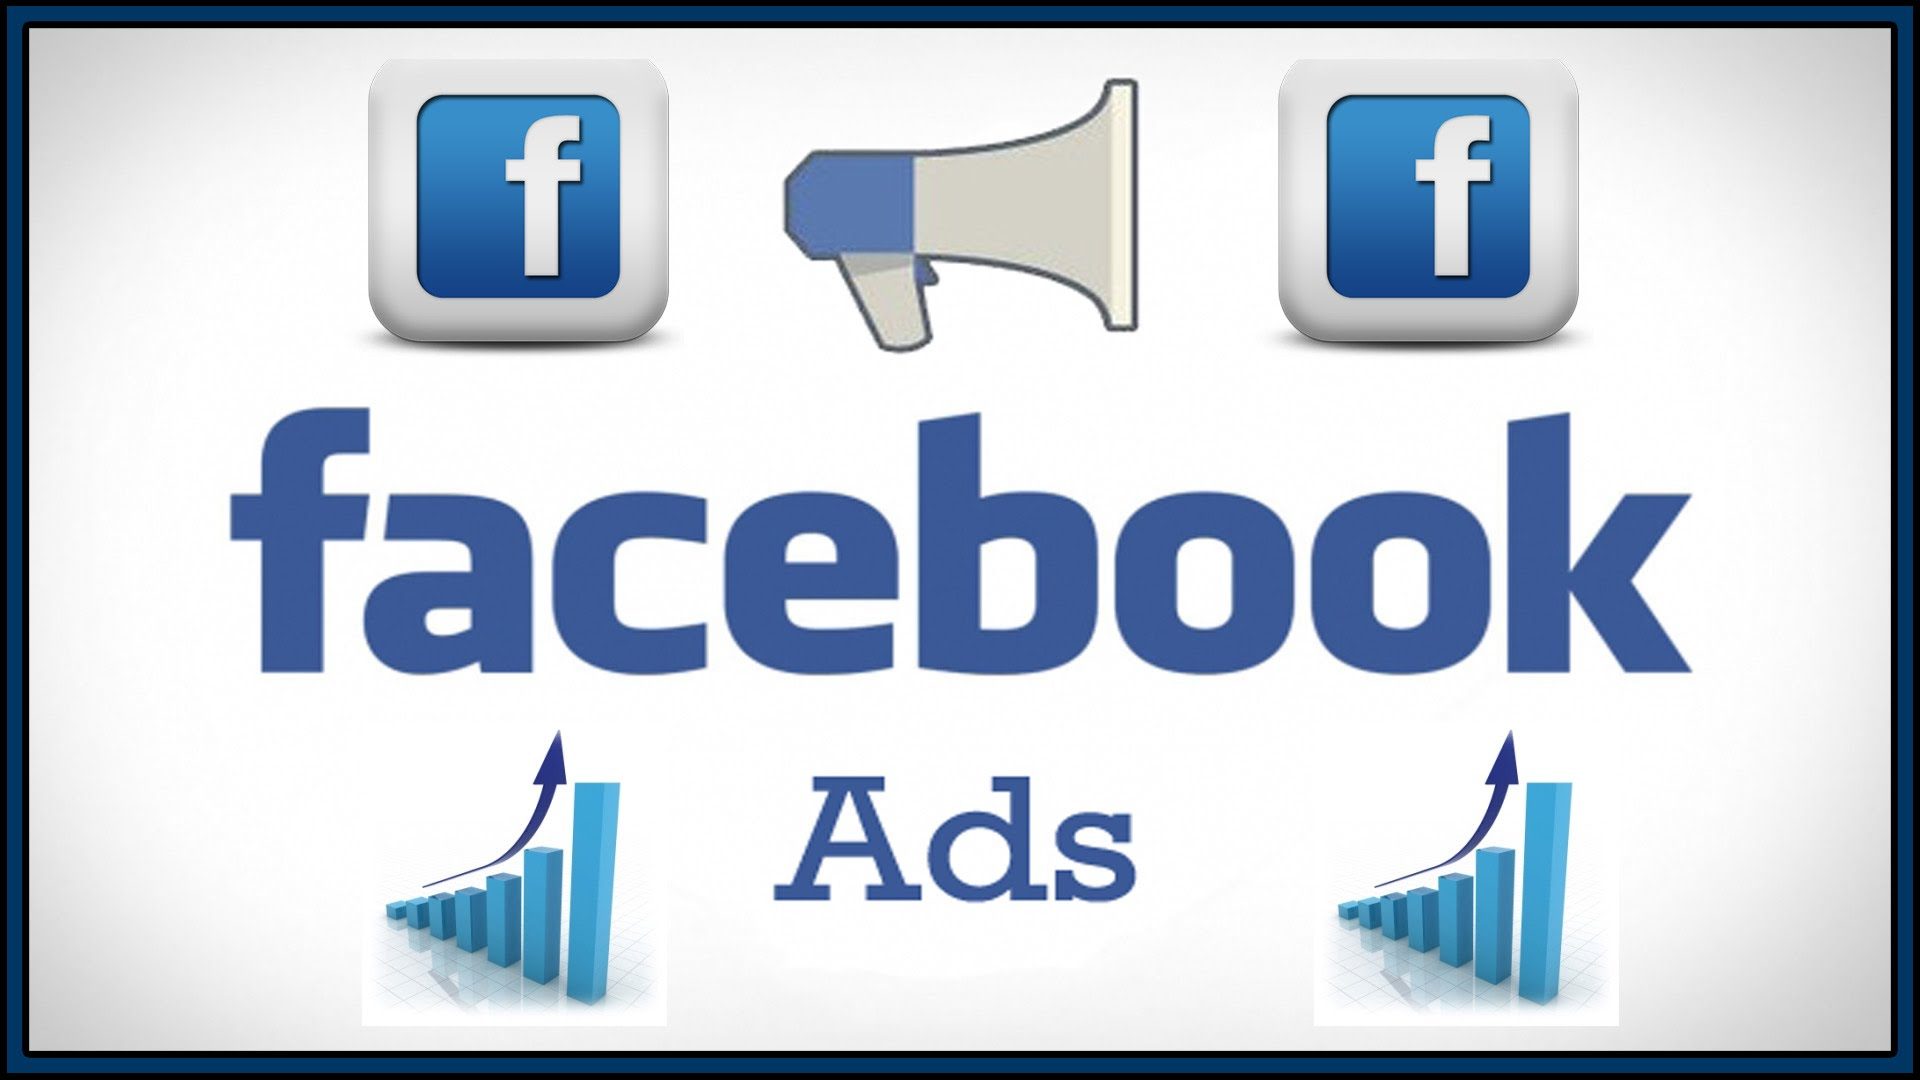 Facebook-Ads-that-convert-1920x1080.jpg